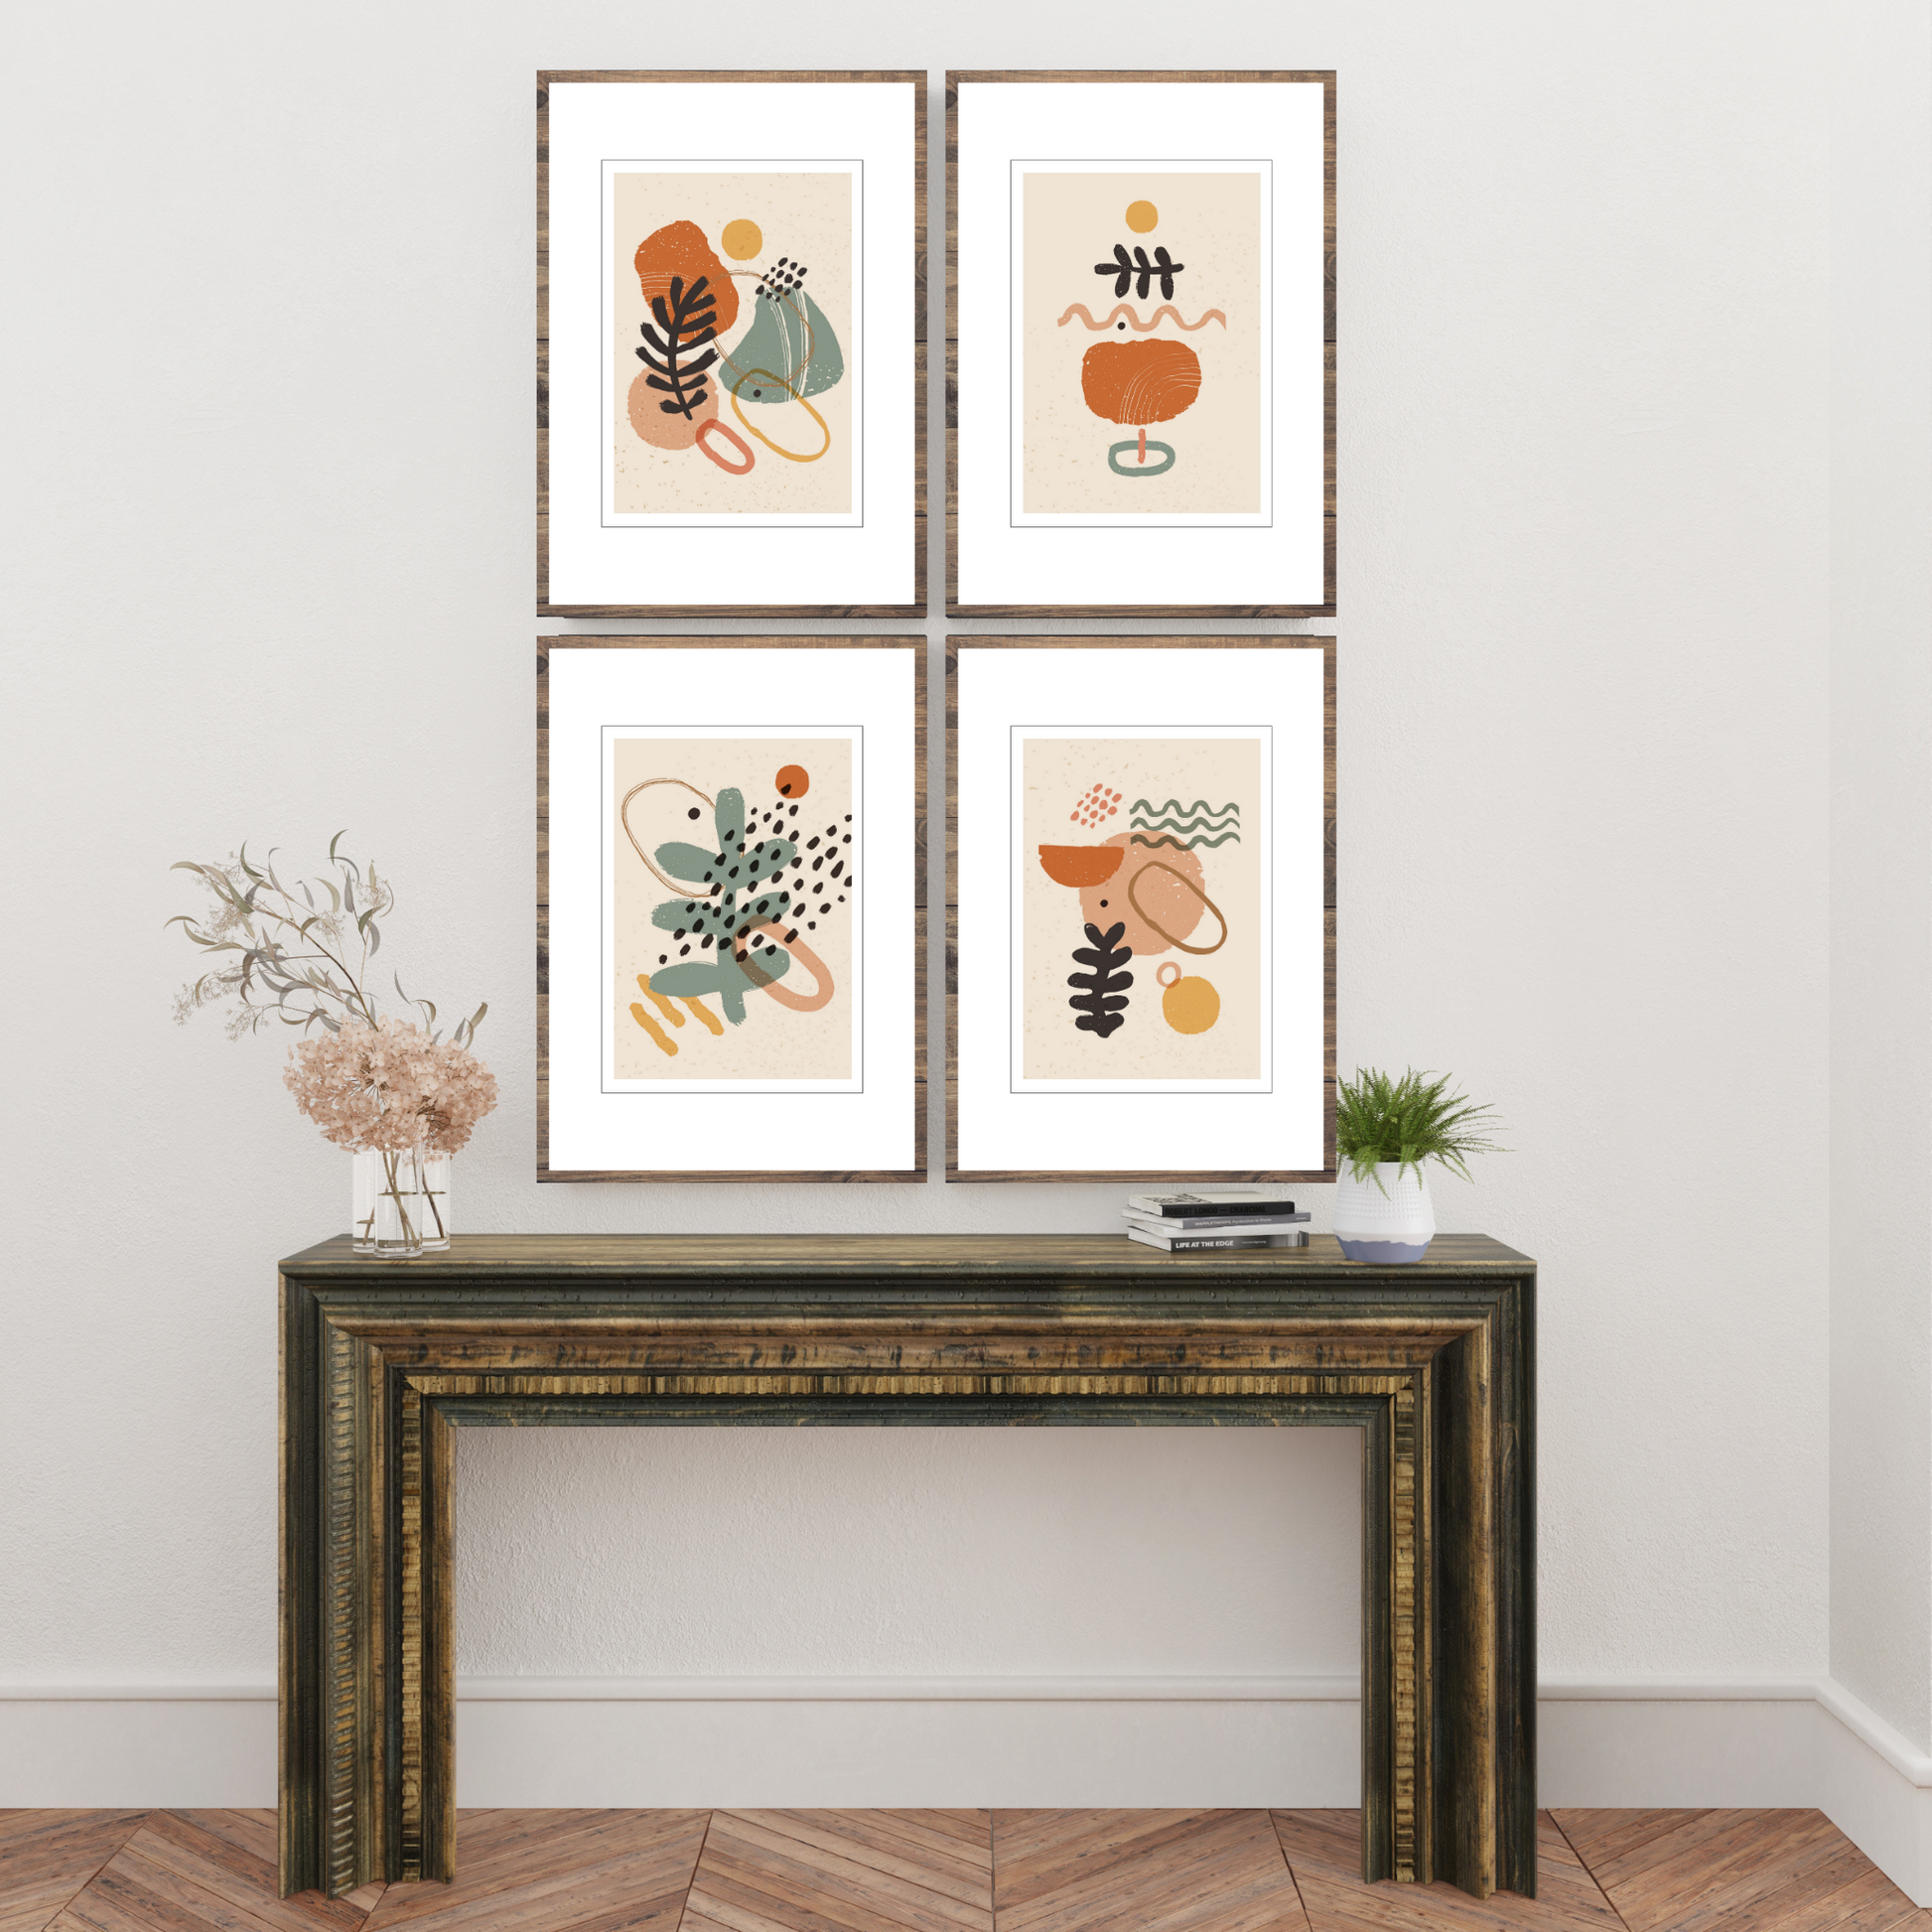 Serie bestående av 4 dekorative grafiske motiver i fargenyanser beige, rust, gul og grønn.